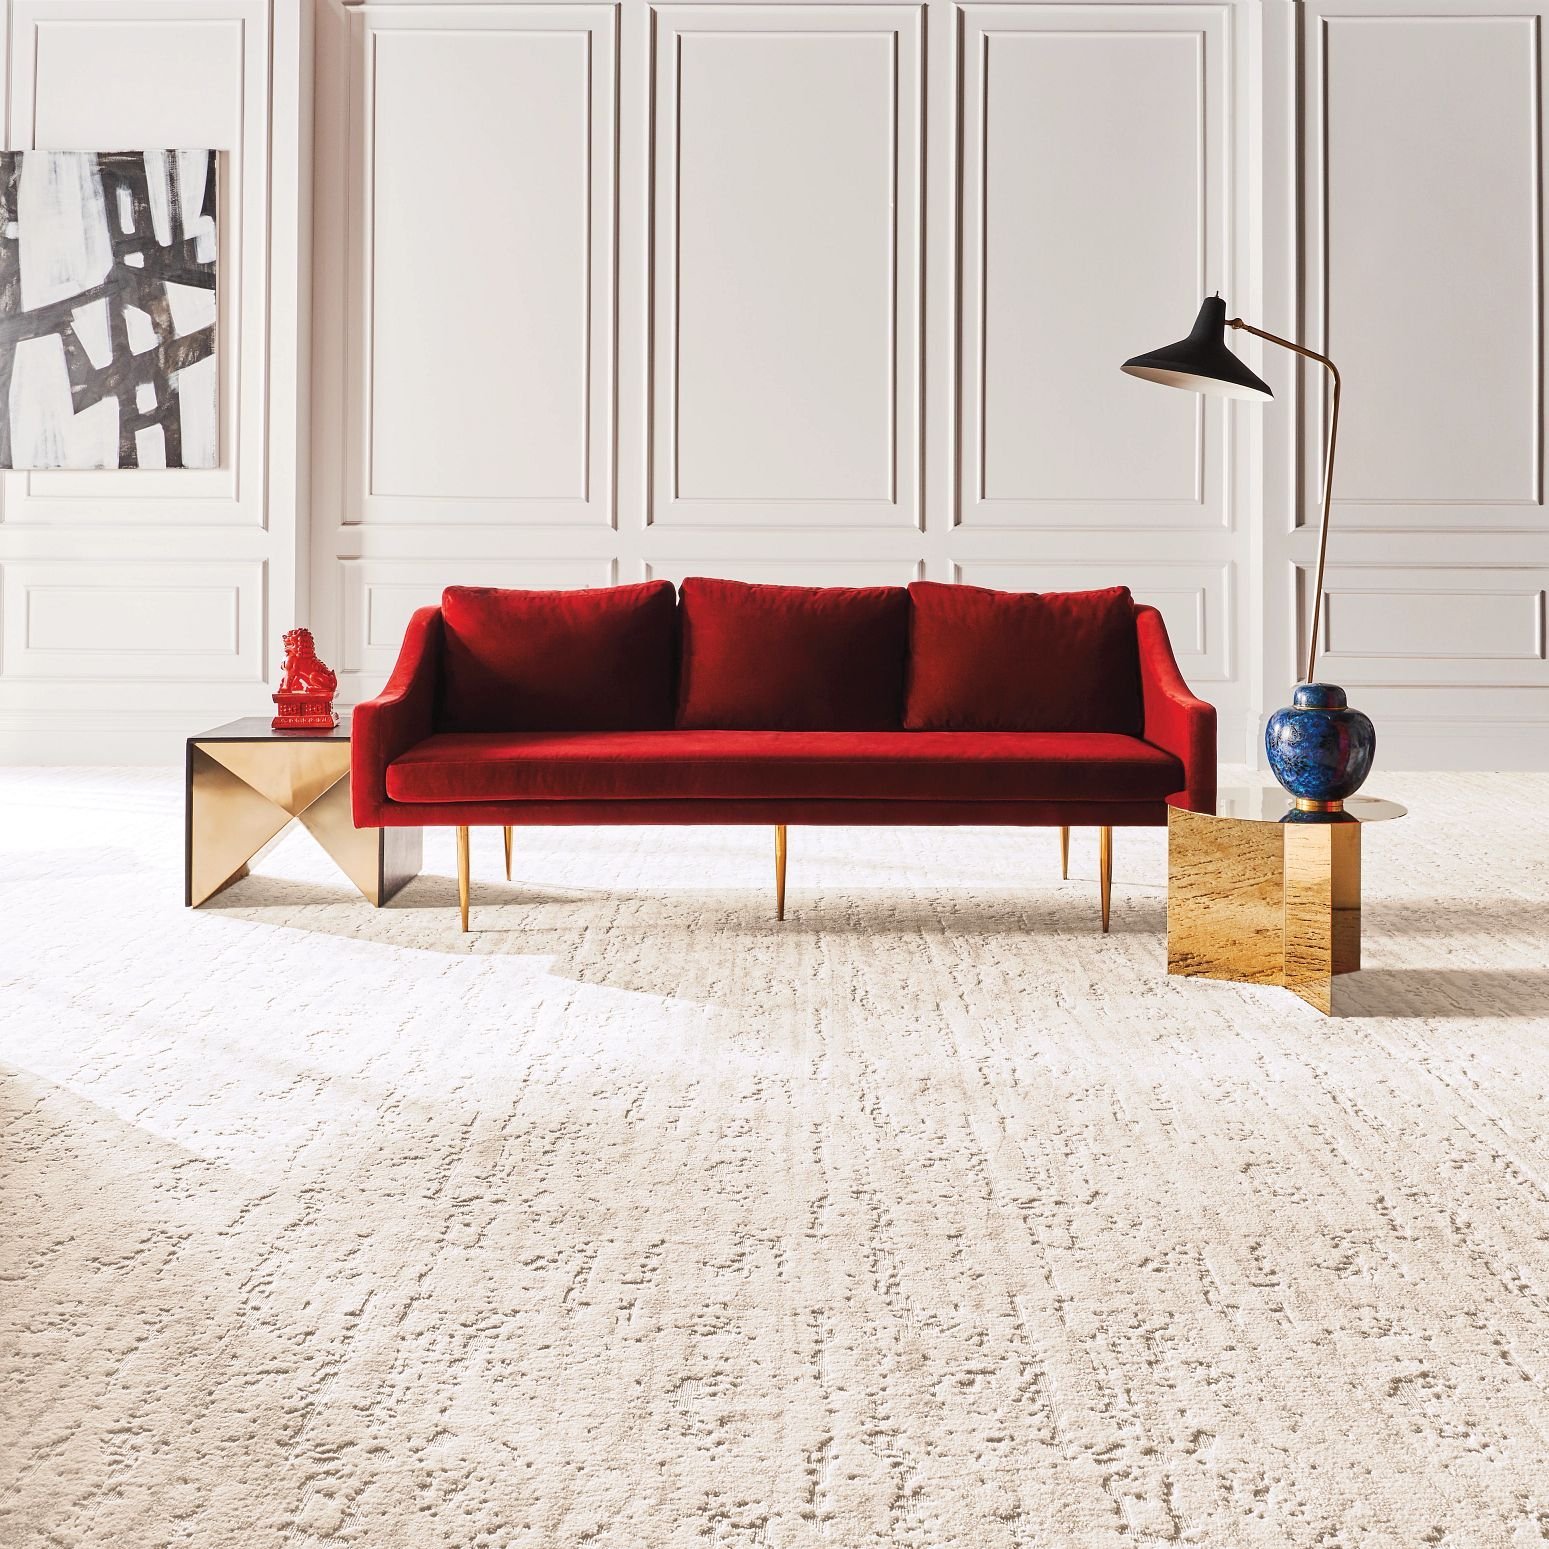 Red sofa on beige carpet from Carpet Studio & Design Inc. in Los Angeles, CA